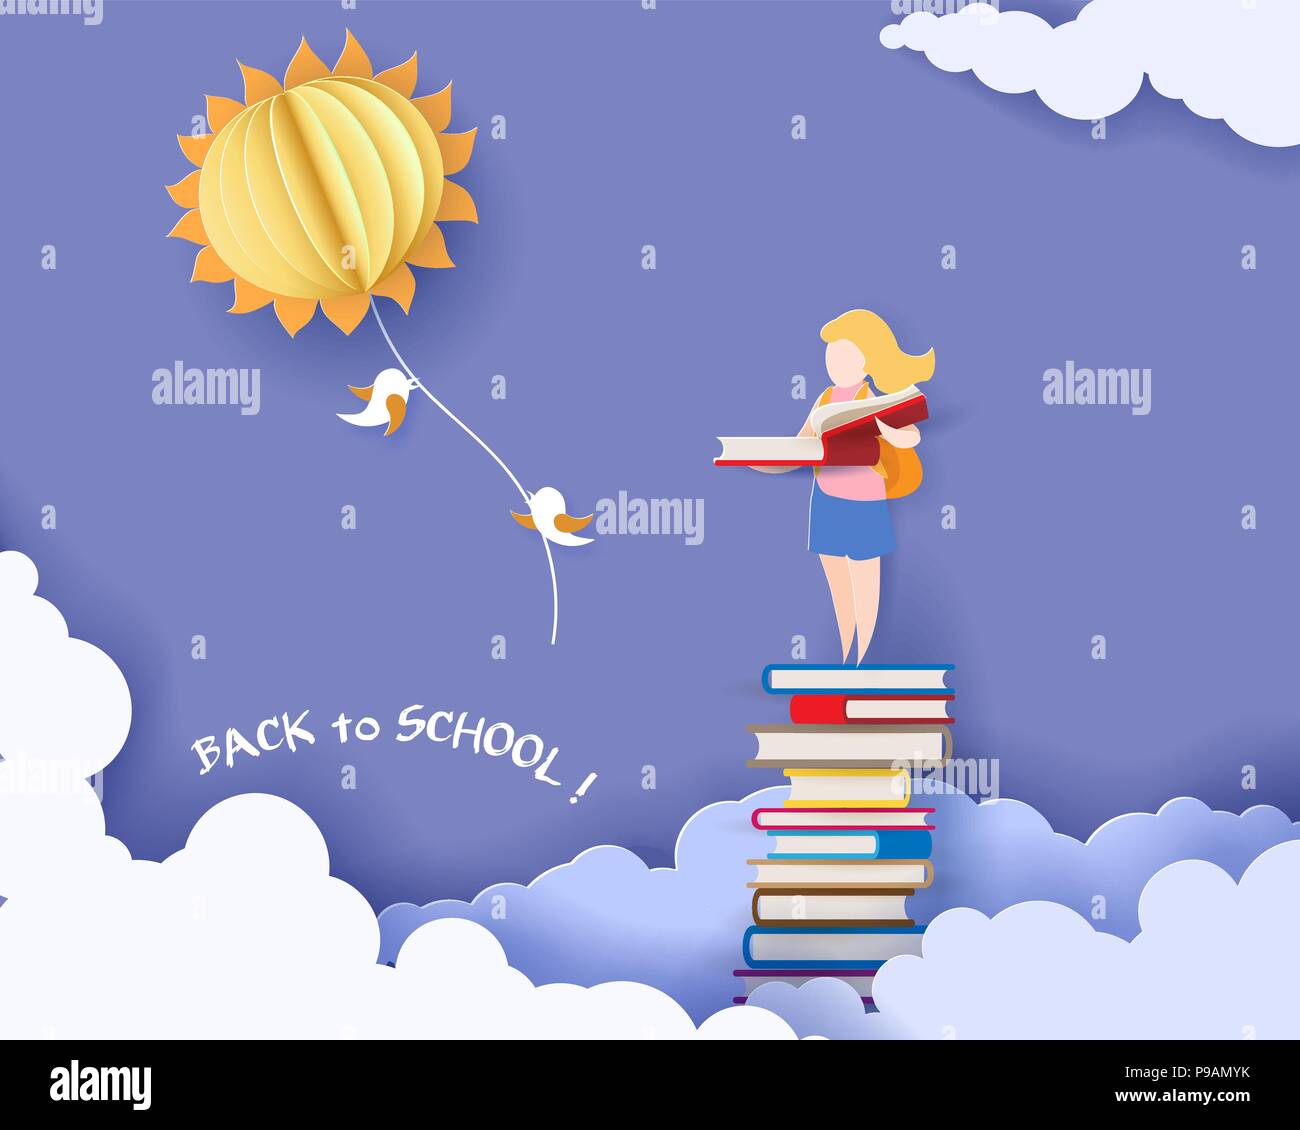 Zurück zu Schule 1. september Karte mit Mädchen, die Bücher und die Sonne am blauen Himmel Hintergrund. Vector Illustration. Papier geschnitten und Handwerk Stil. Stock Vektor